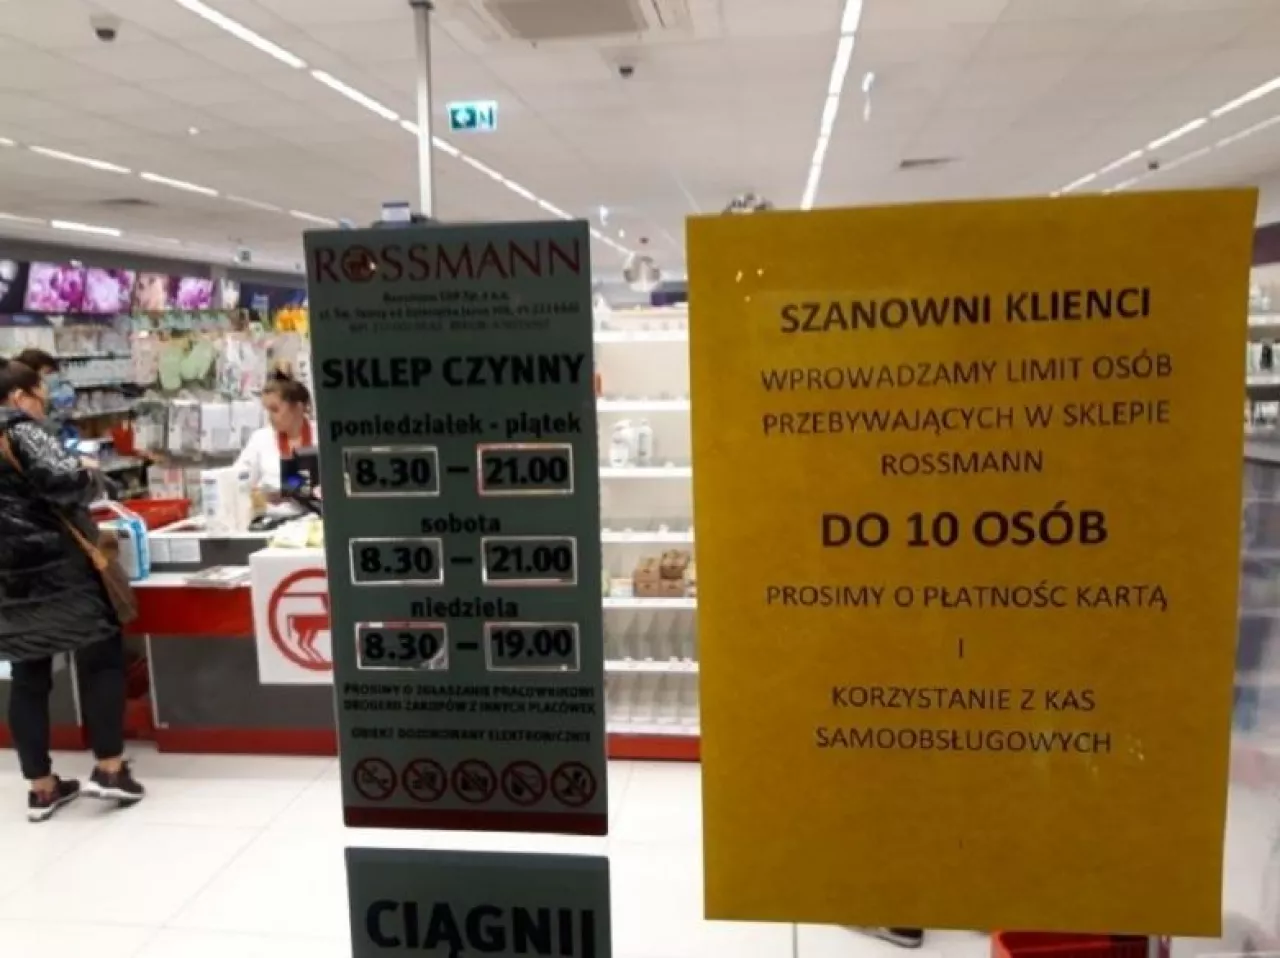 Informacja dla klientów w Rossmannie z początku marca (fot.wiadomoscikosmetyczne.pl)